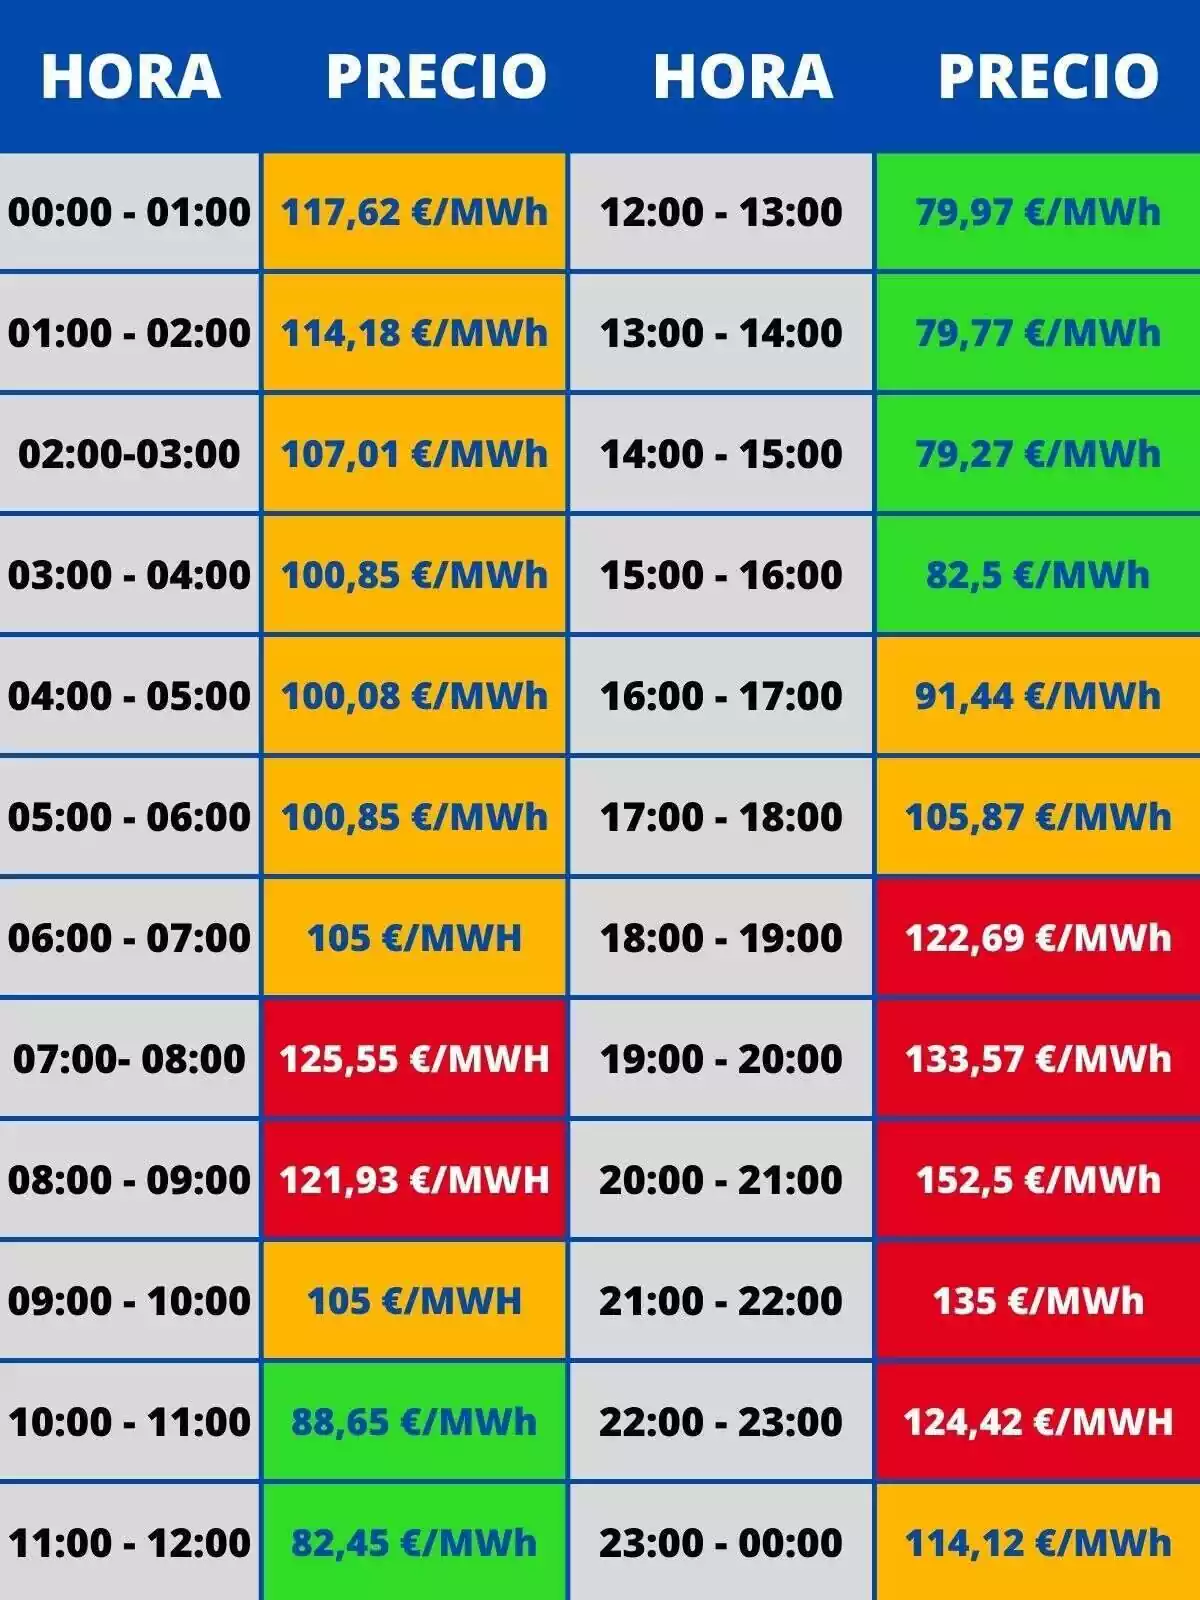 Tabla mostrando las horas del día y sus precios correspondientes